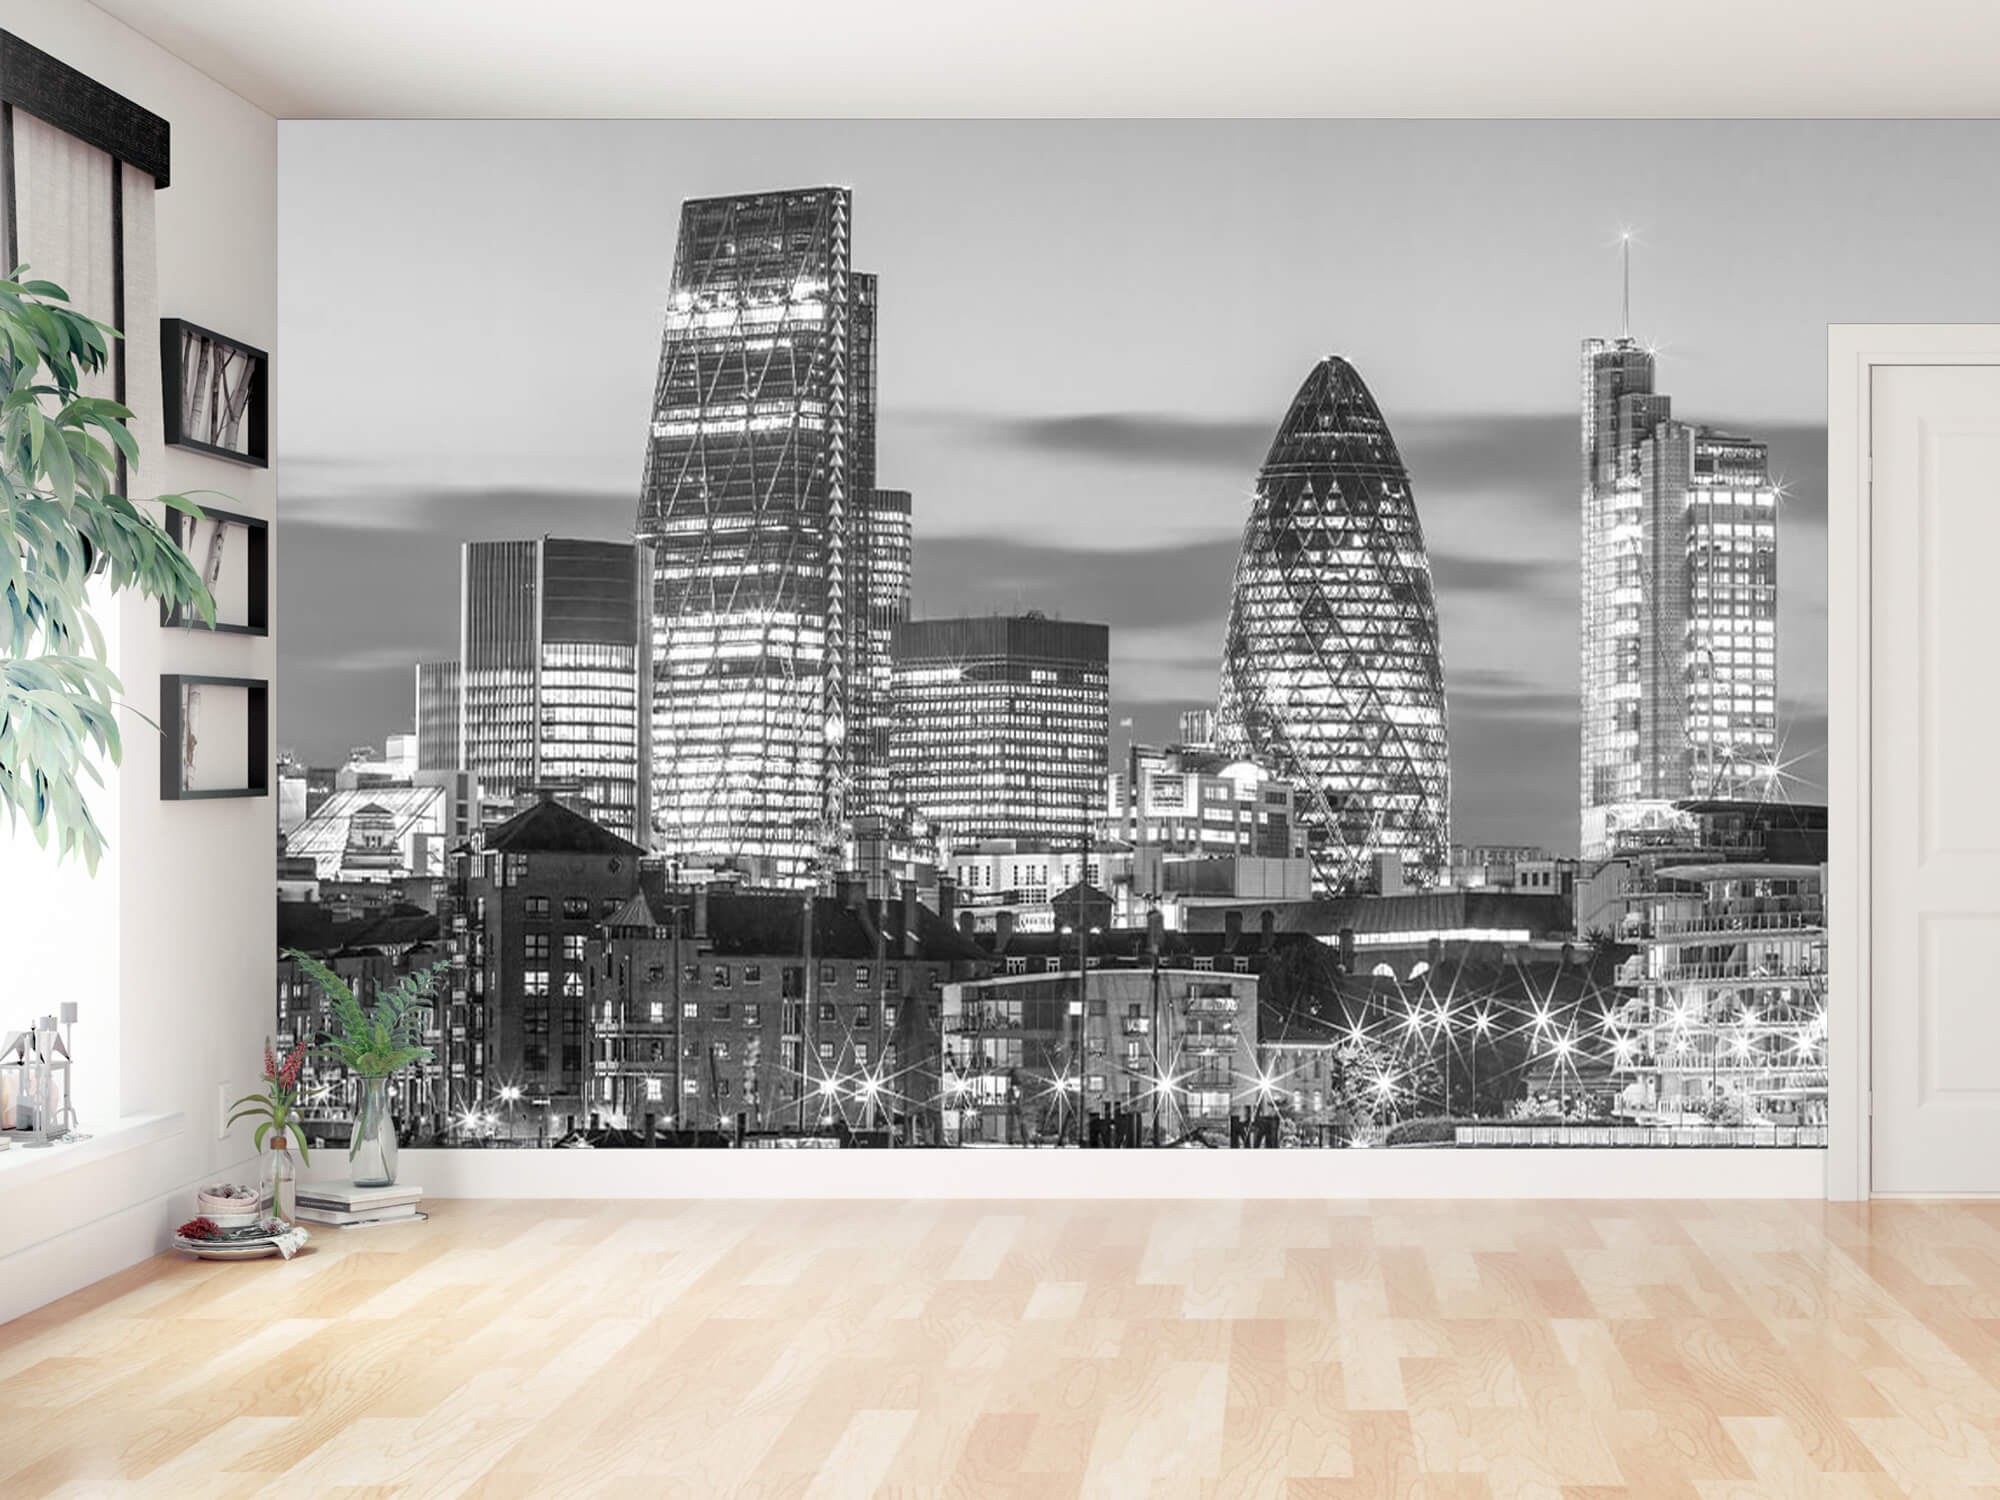  Papel pintado con El horizonte de Londres - Habitación de adolescentes 13